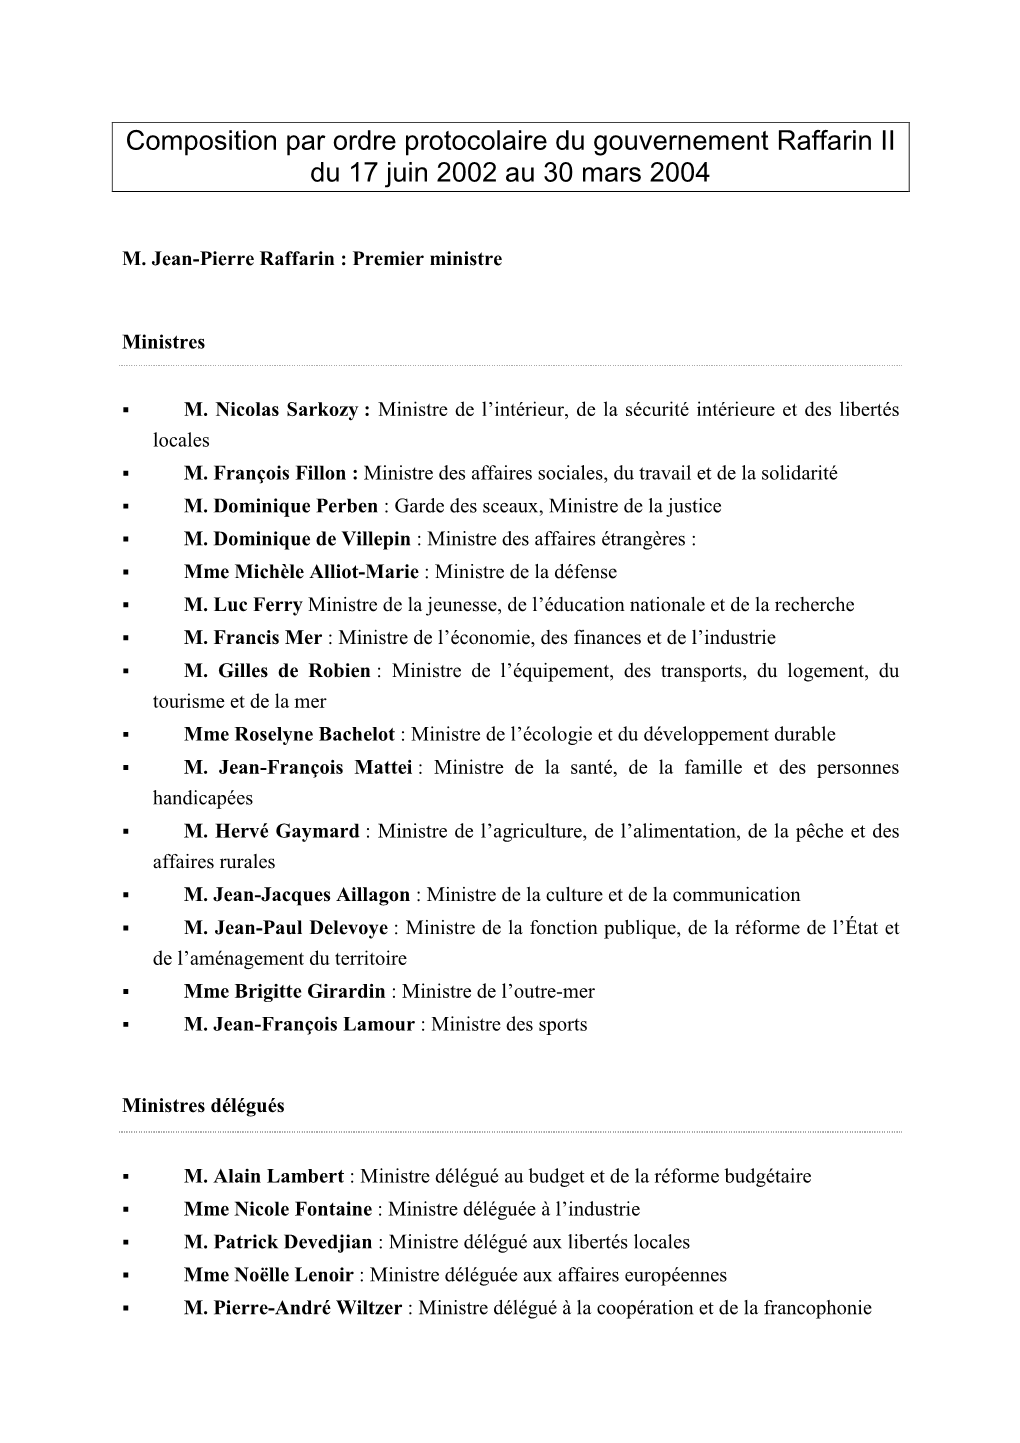 Composition Par Ordre Protocolaire Du Gouvernement Raffarin II Du 17 Juin 2002 Au 30 Mars 2004